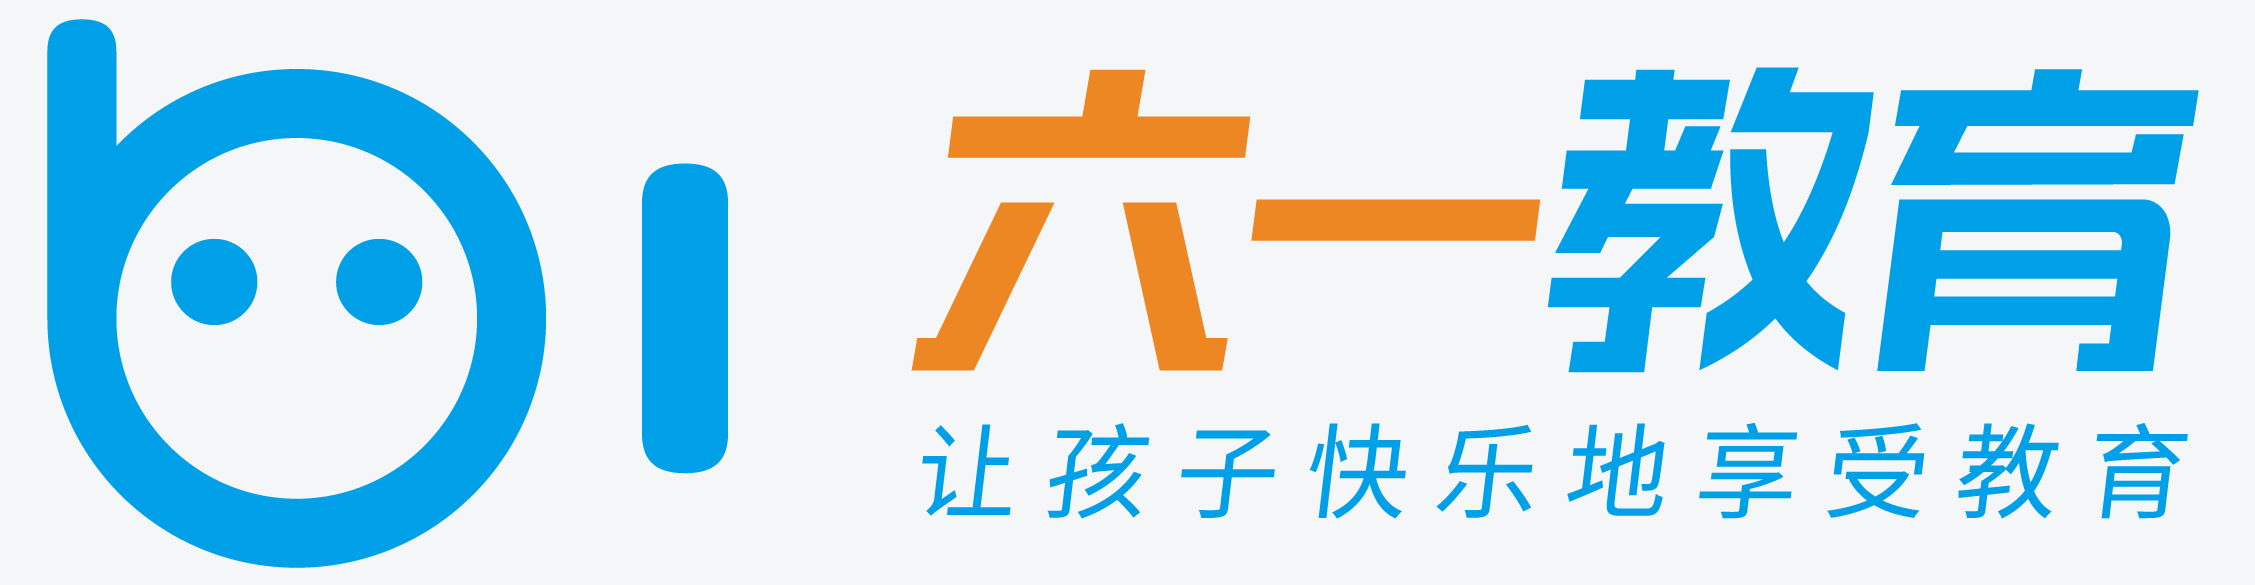 广州六一信息科技有限公司